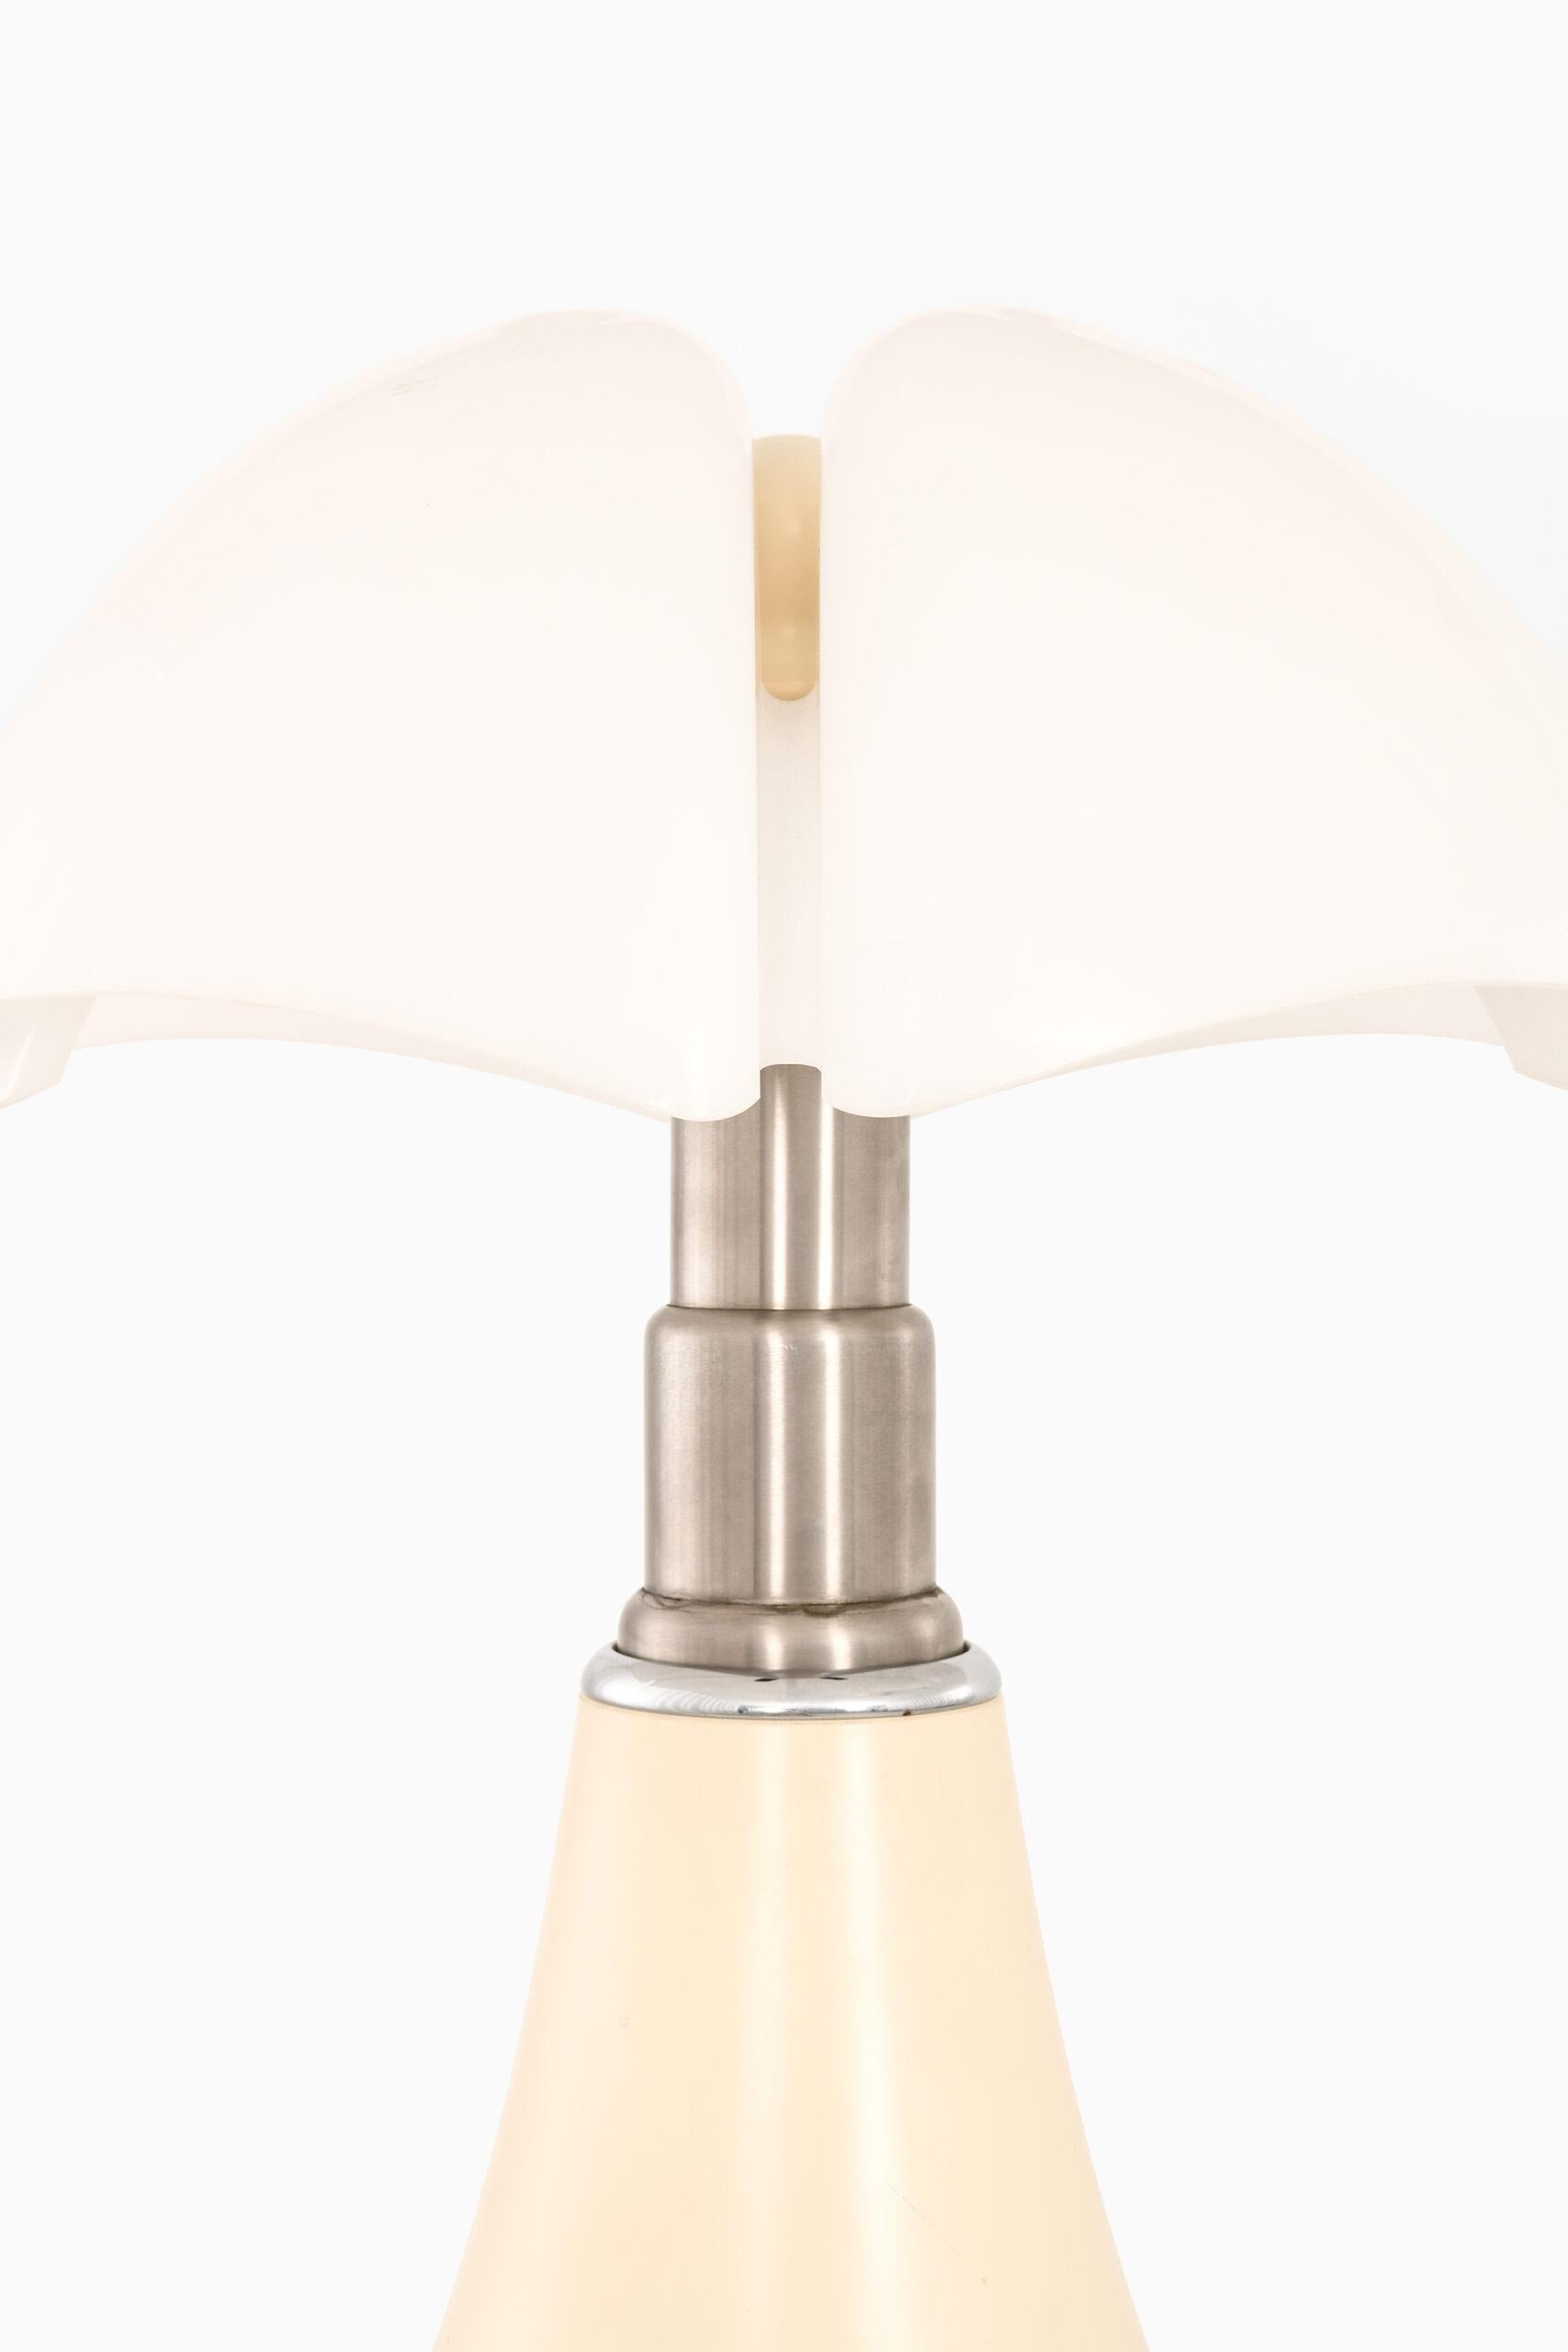 Très rare paire de lampes de table hautes modèle Pipistrello conçu par Gae Aulenti. Produit par Martinelli Luce en Italie. Hauteur : 71-87 cm.